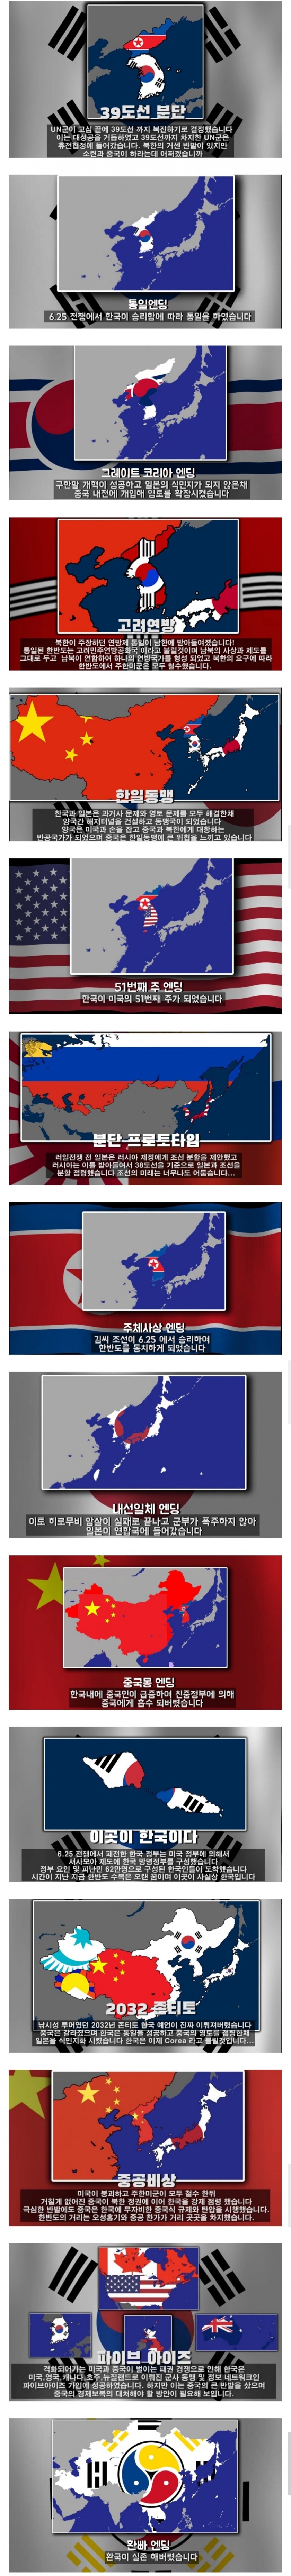 한국의 여러 가지 대체 역사